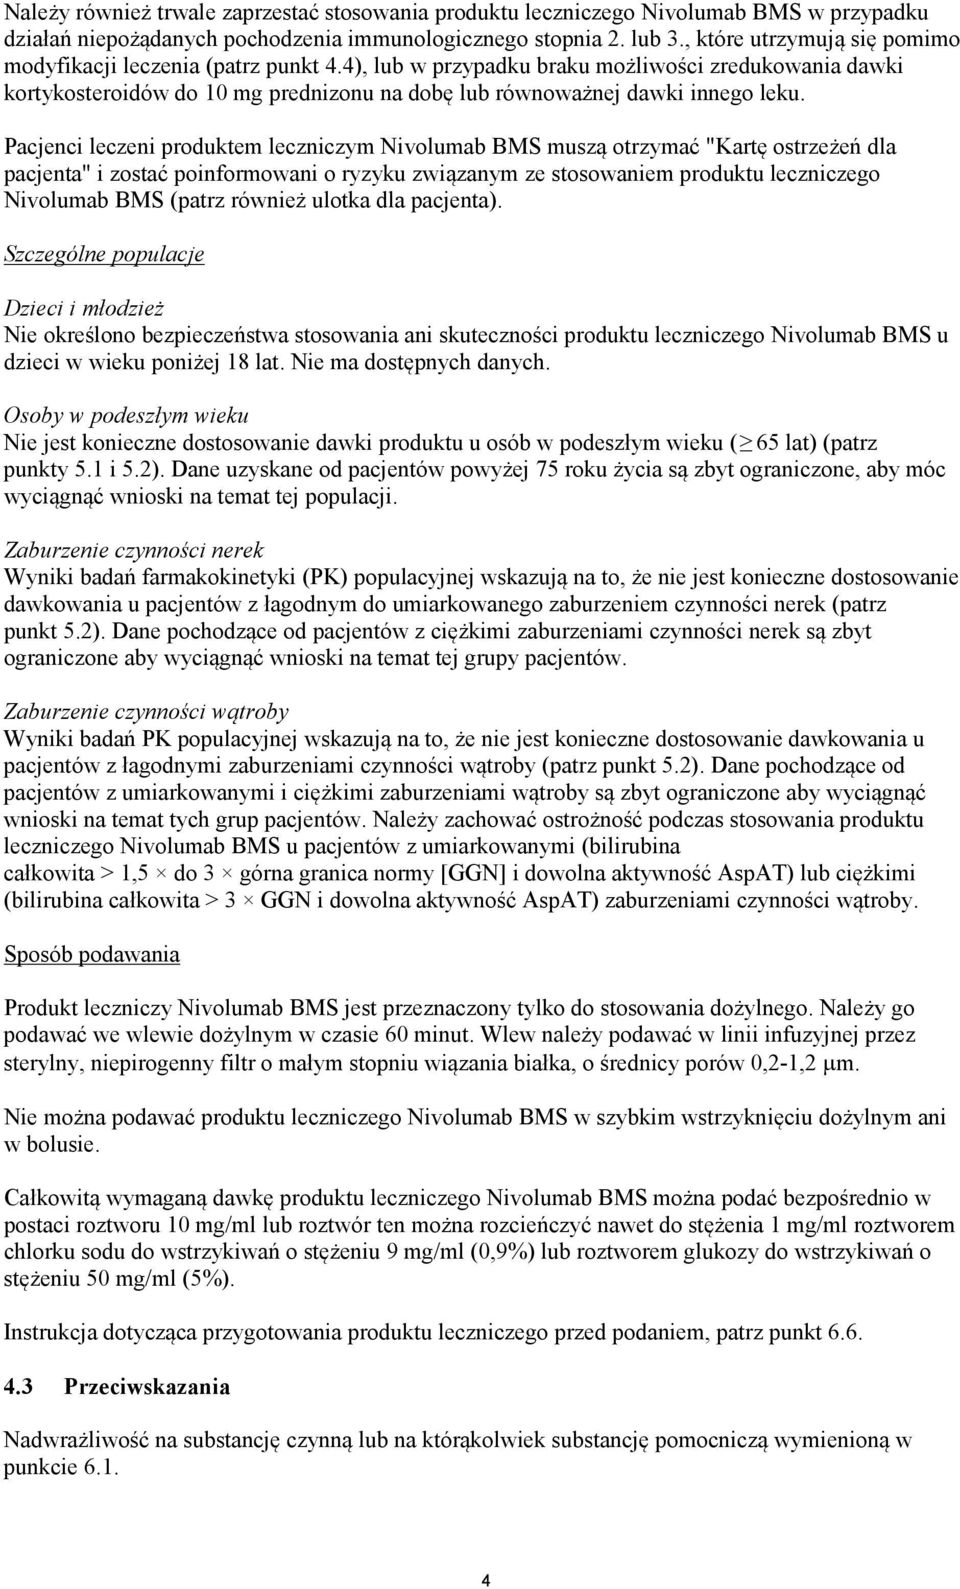 Pacjenci leczeni produktem leczniczym Nivolumab BMS muszą otrzymać "Kartę ostrzeżeń dla pacjenta" i zostać poinformowani o ryzyku związanym ze stosowaniem produktu leczniczego Nivolumab BMS (patrz